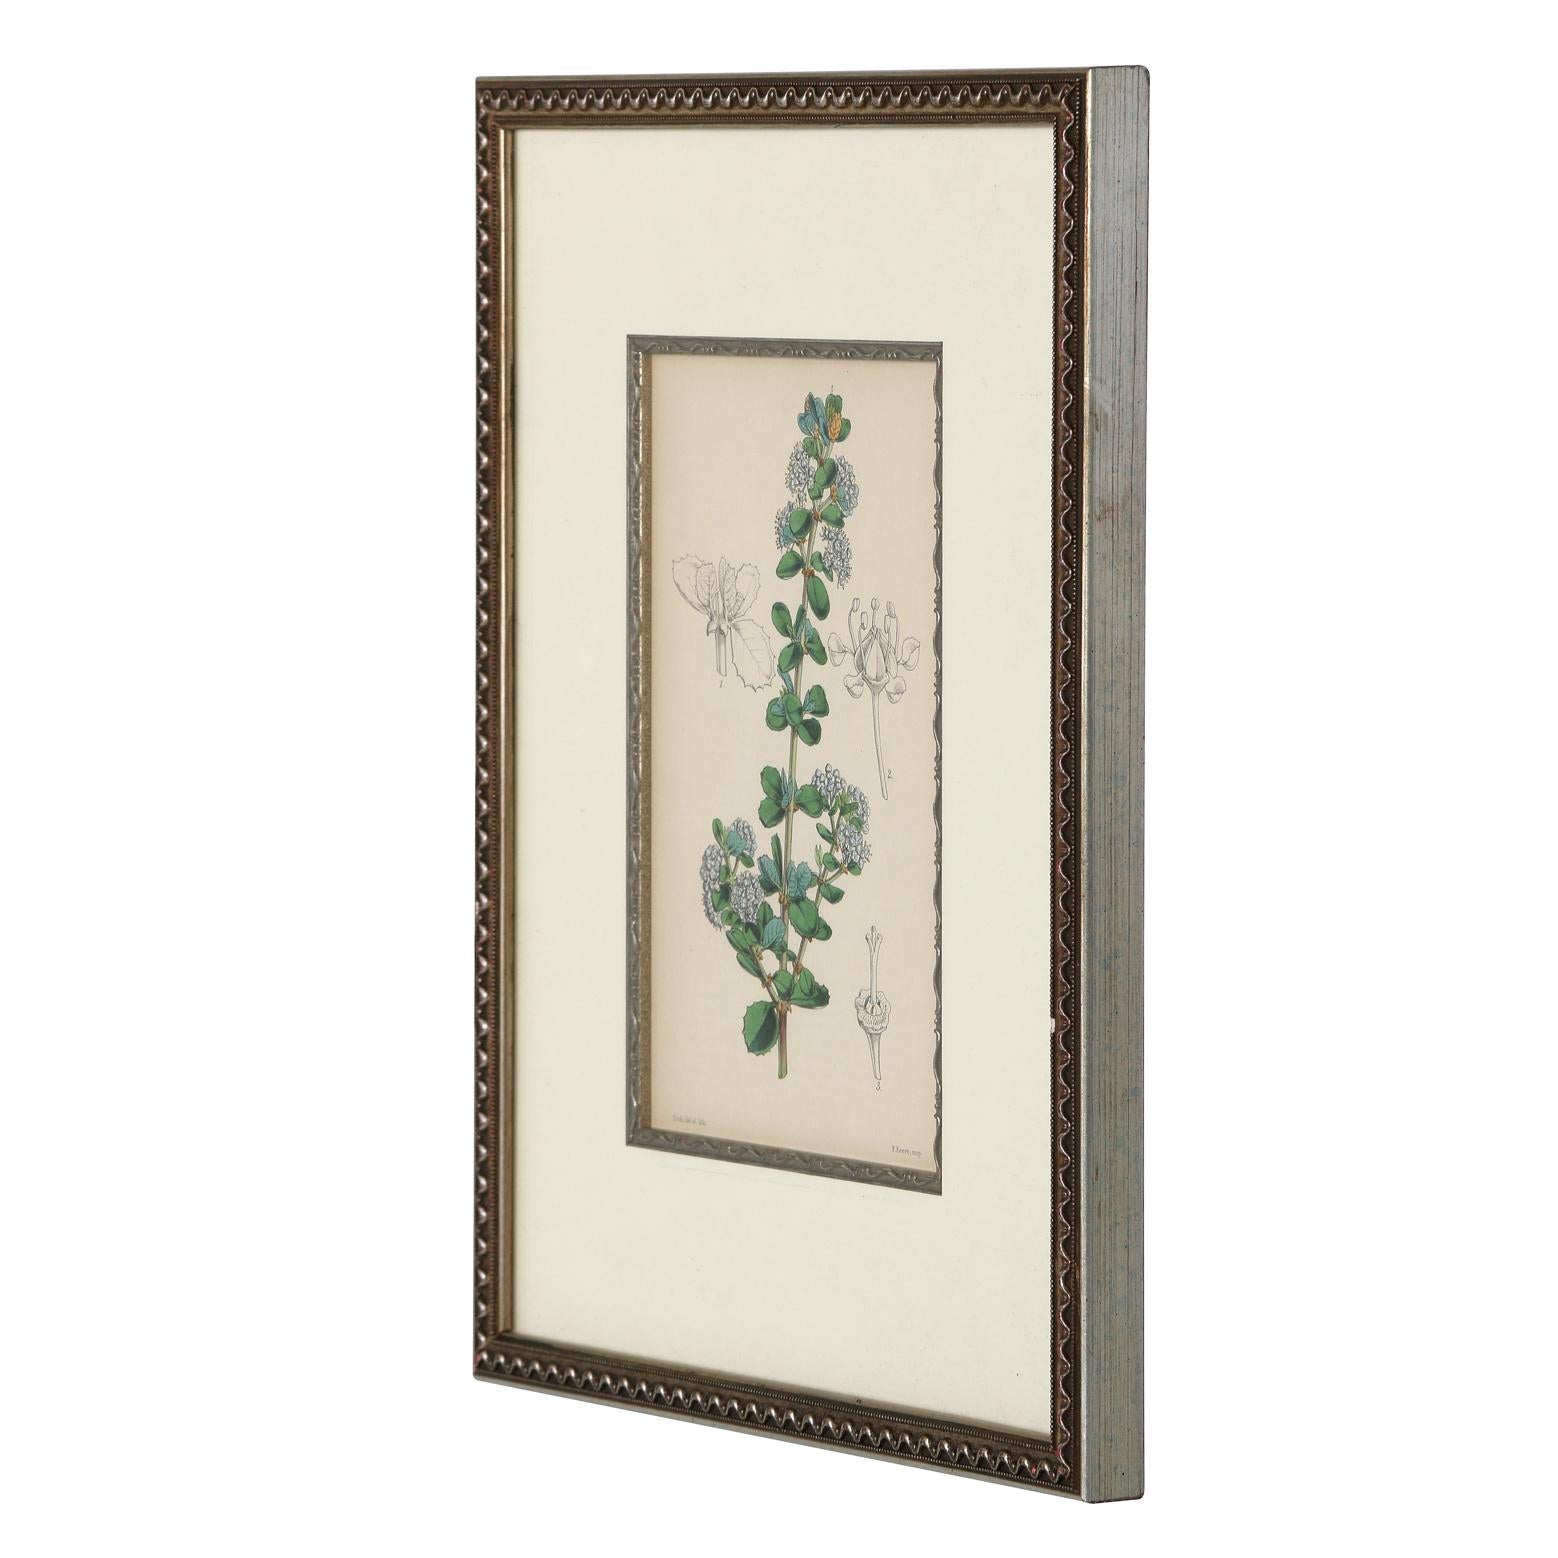 Une série de quatre lithographies botaniques du 19e siècle qui peuvent servir d'éléments de décoration dans n'importe quelle pièce.  Les lithographies sont encadrées dans un cadre en métal moulé, avec le détail supplémentaire d'un filet intérieur